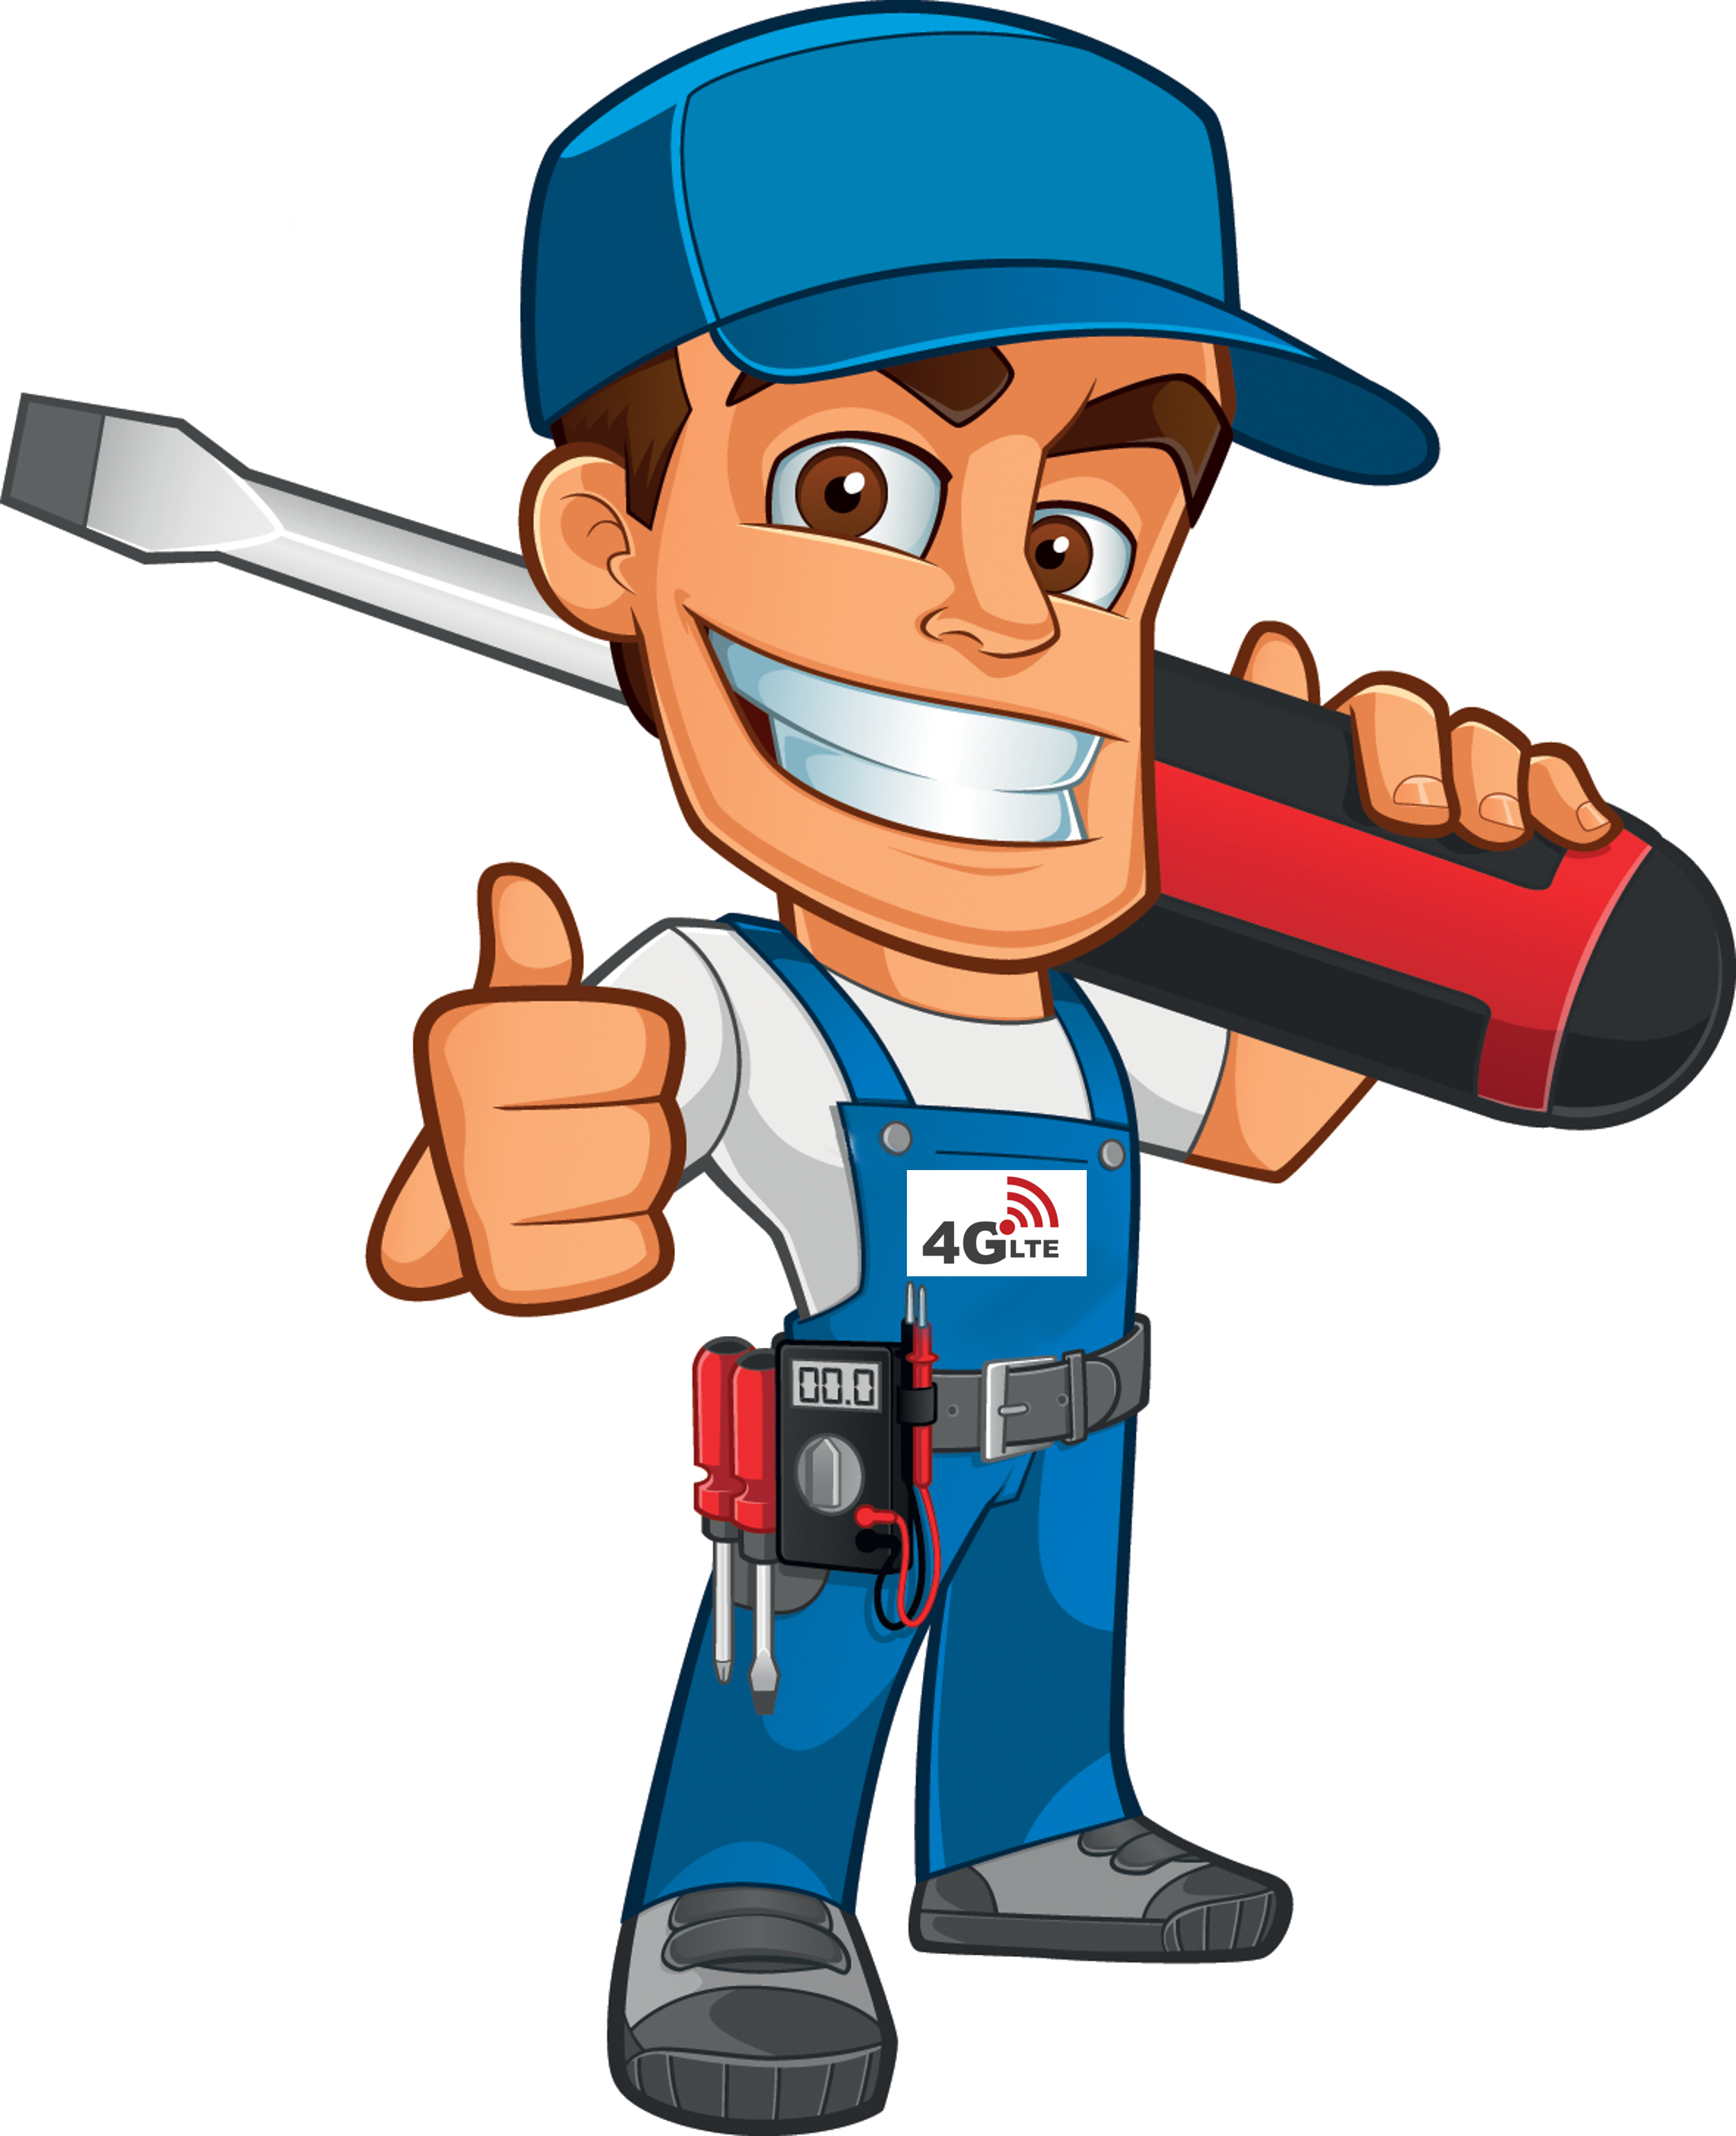 Handyman clipart repair man, Handyman repair man Transparent FREE for ... image